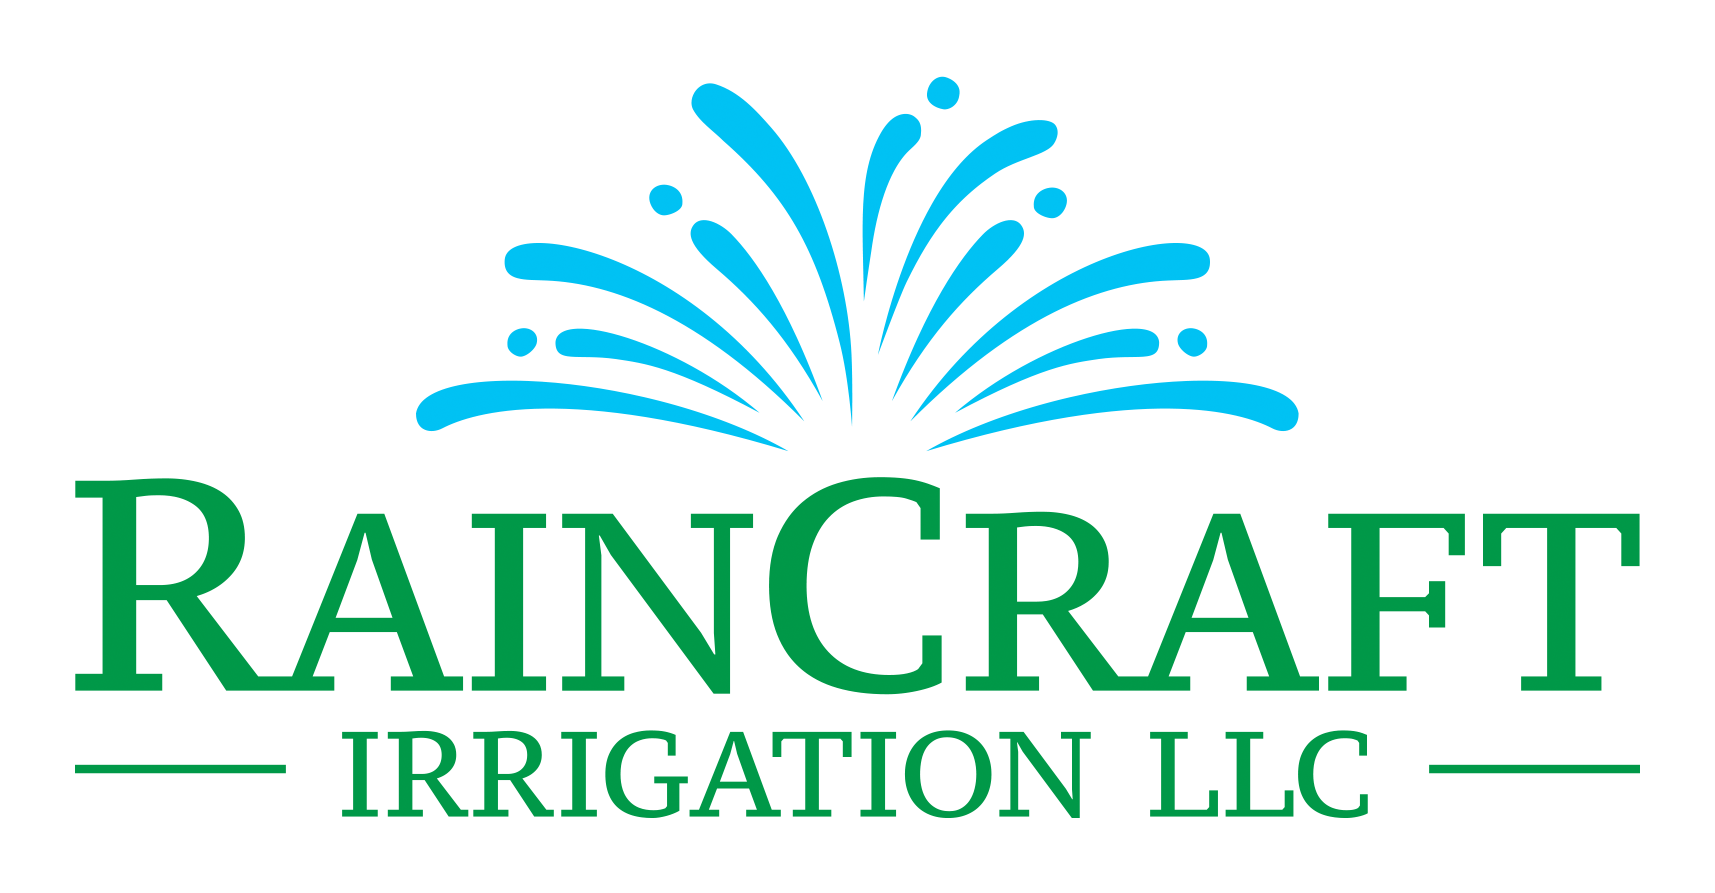 Sprinkler Logo - Lawn Sprinkler and Irrigation Services in Sussex WI